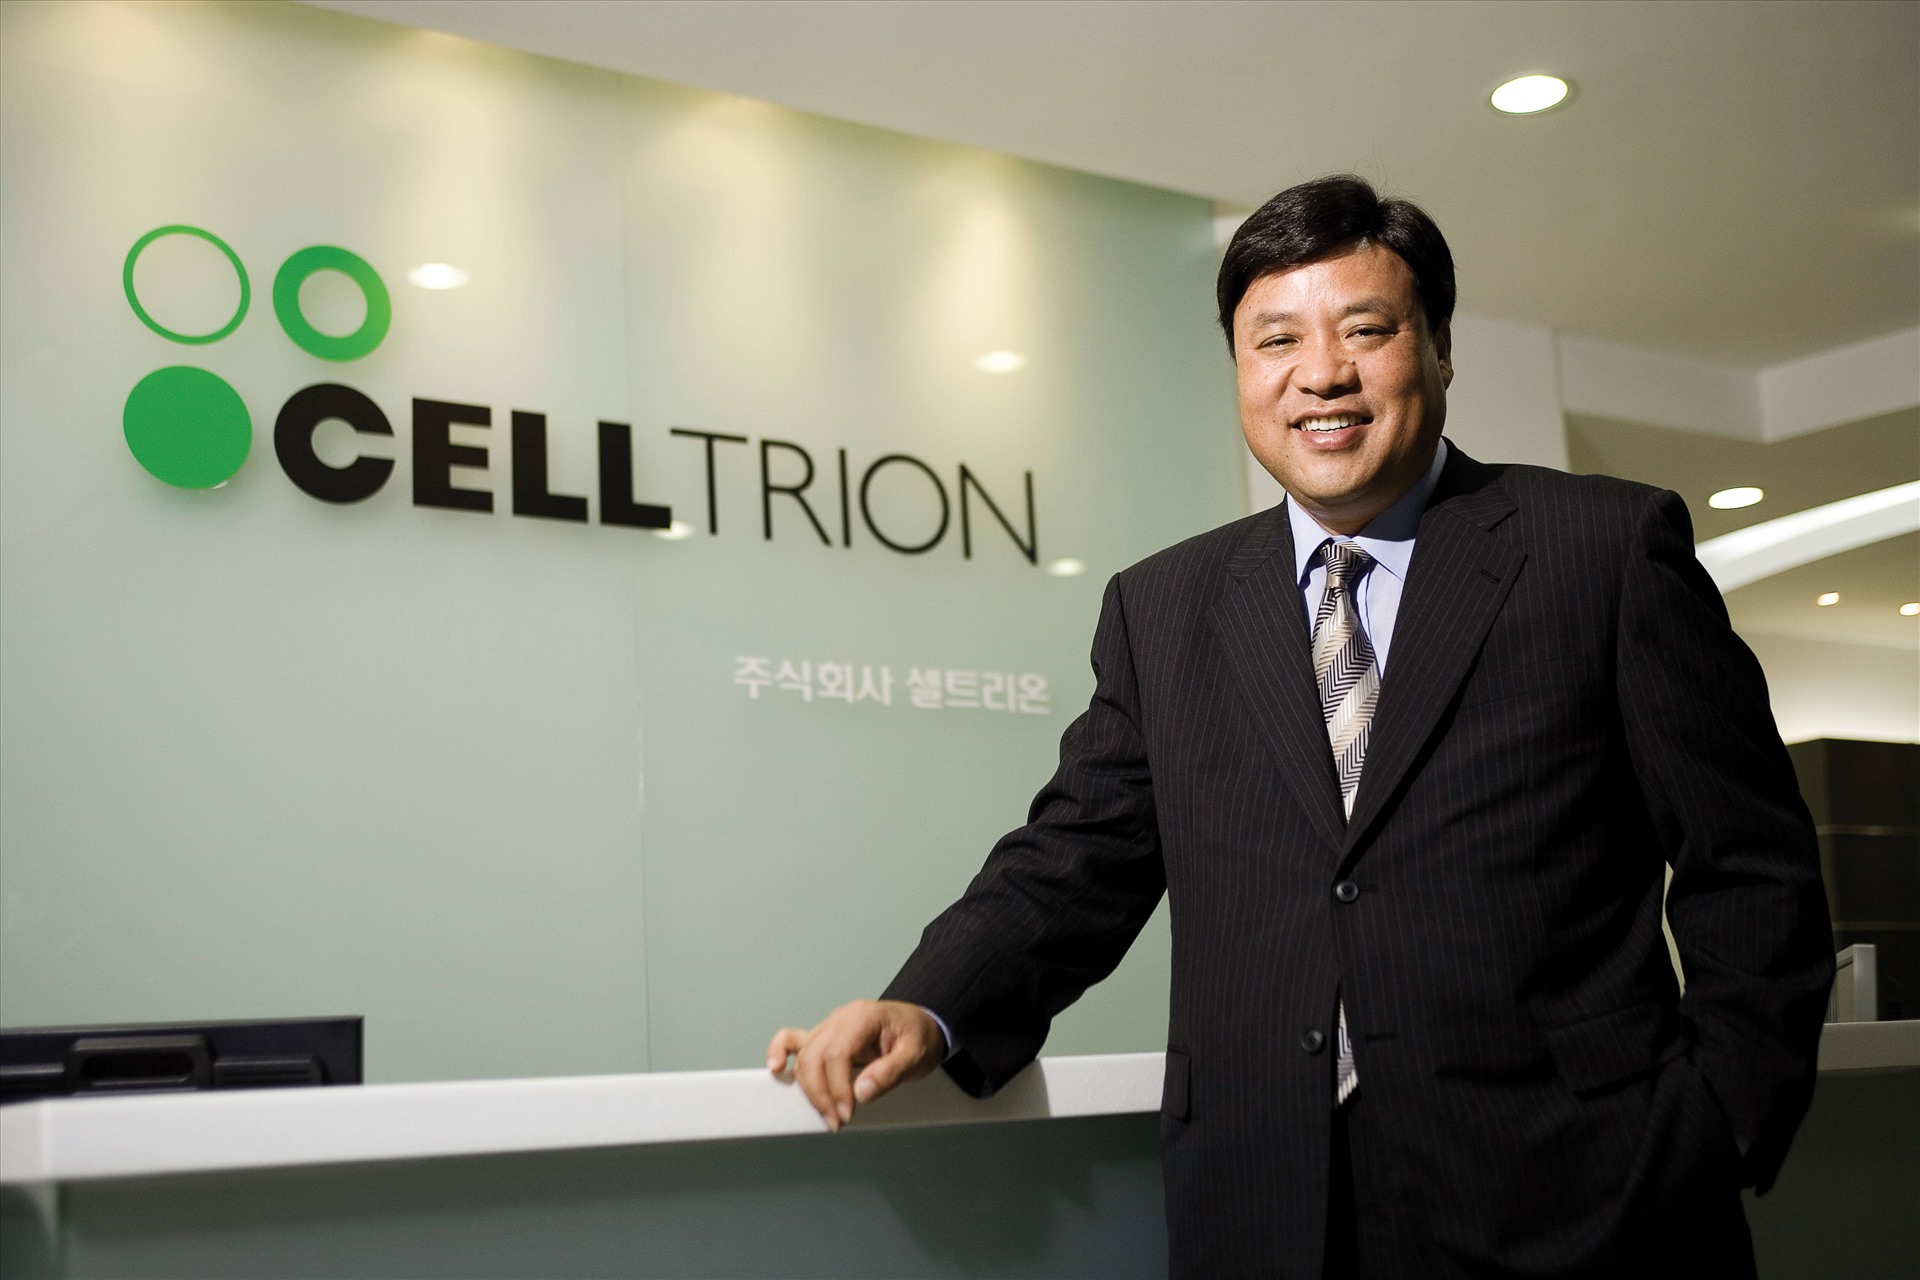 Đứng thứ 3 trong danh sách là tỉ phú Seo Jung-jin - đồng sáng lập và CEO của công ty dược phẩm sinh học Celltrion có trụ sở tại Incheon, Hàn Quốc. Trong vòng hơn 5 tháng qua, tài sản tỉ phú này tăng  gần 1 tỉ USD. Ảnh: Nikkei Asian Review